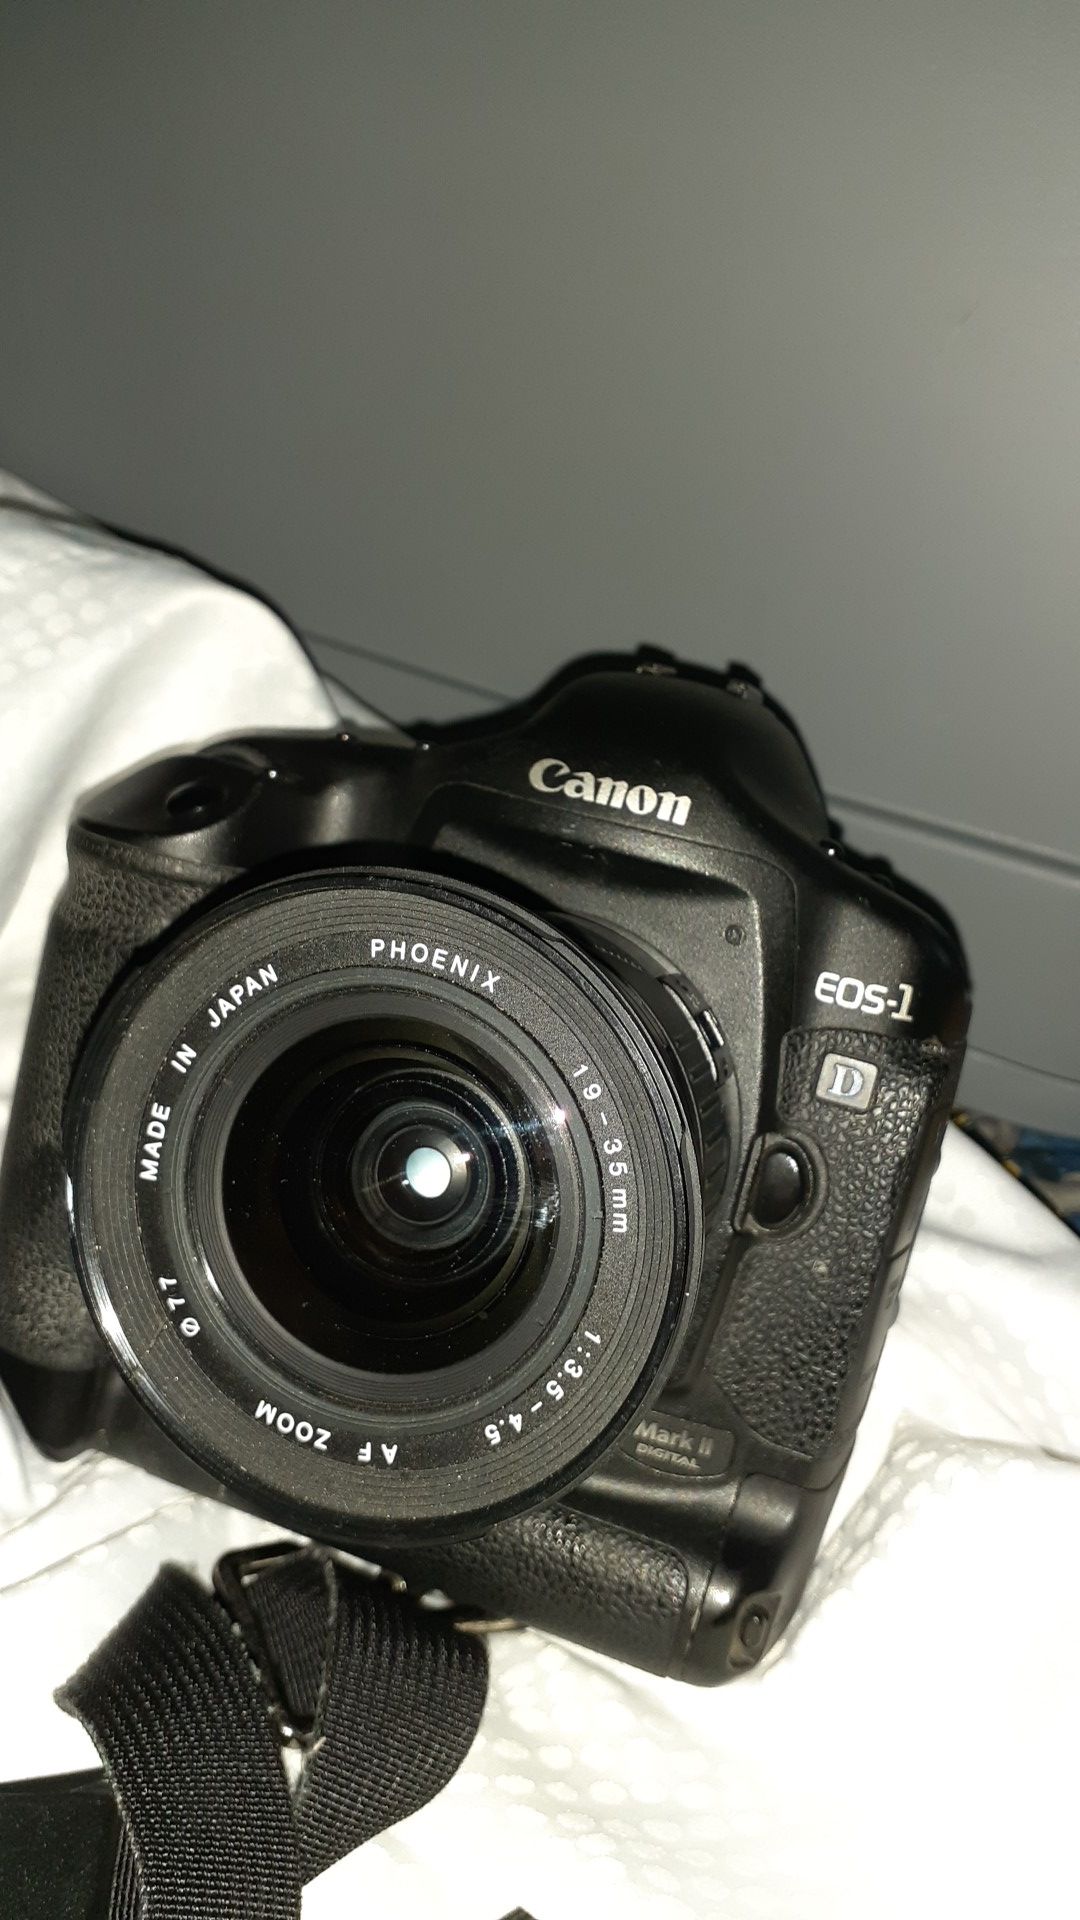 Canon EOS 1 D mark 11 digital